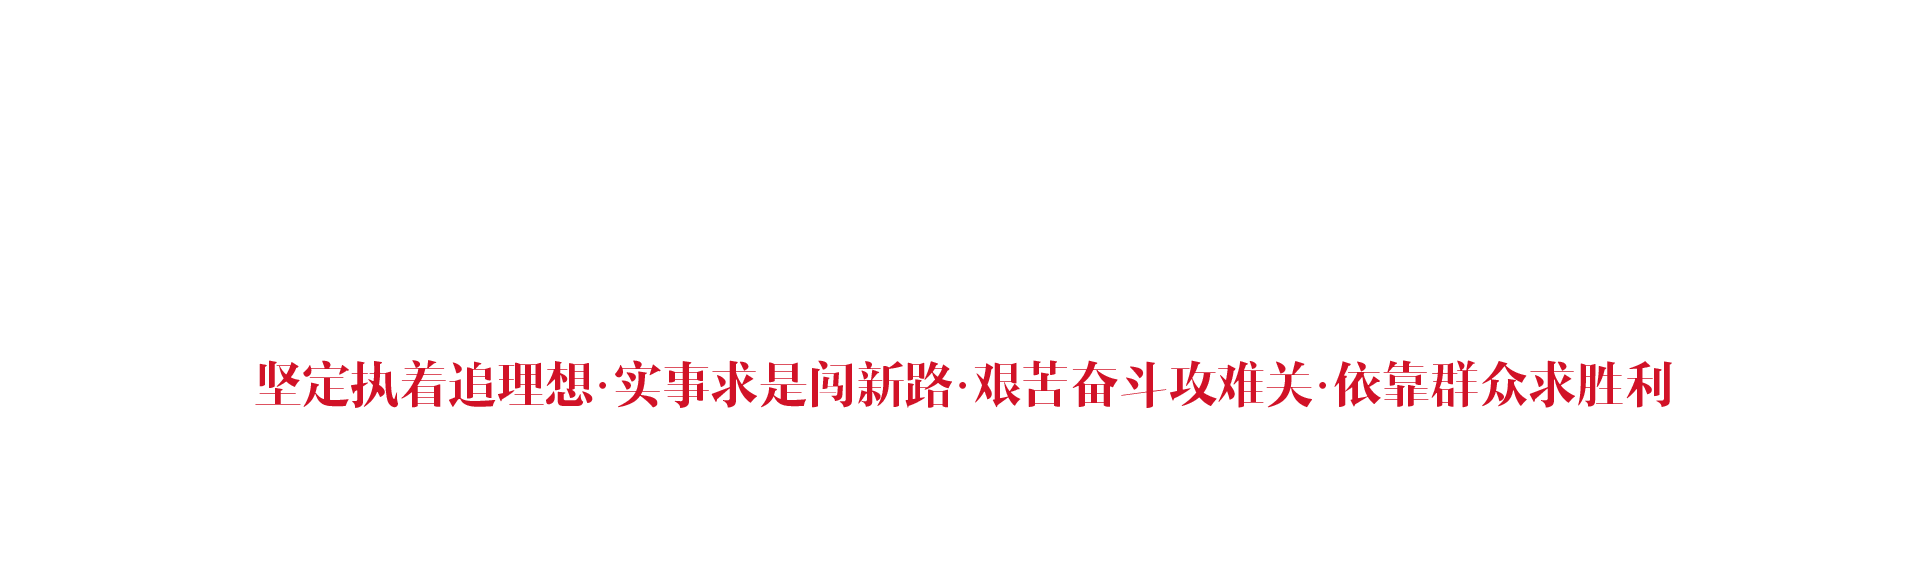 井冈山市红色文化培训中心之底部背景图